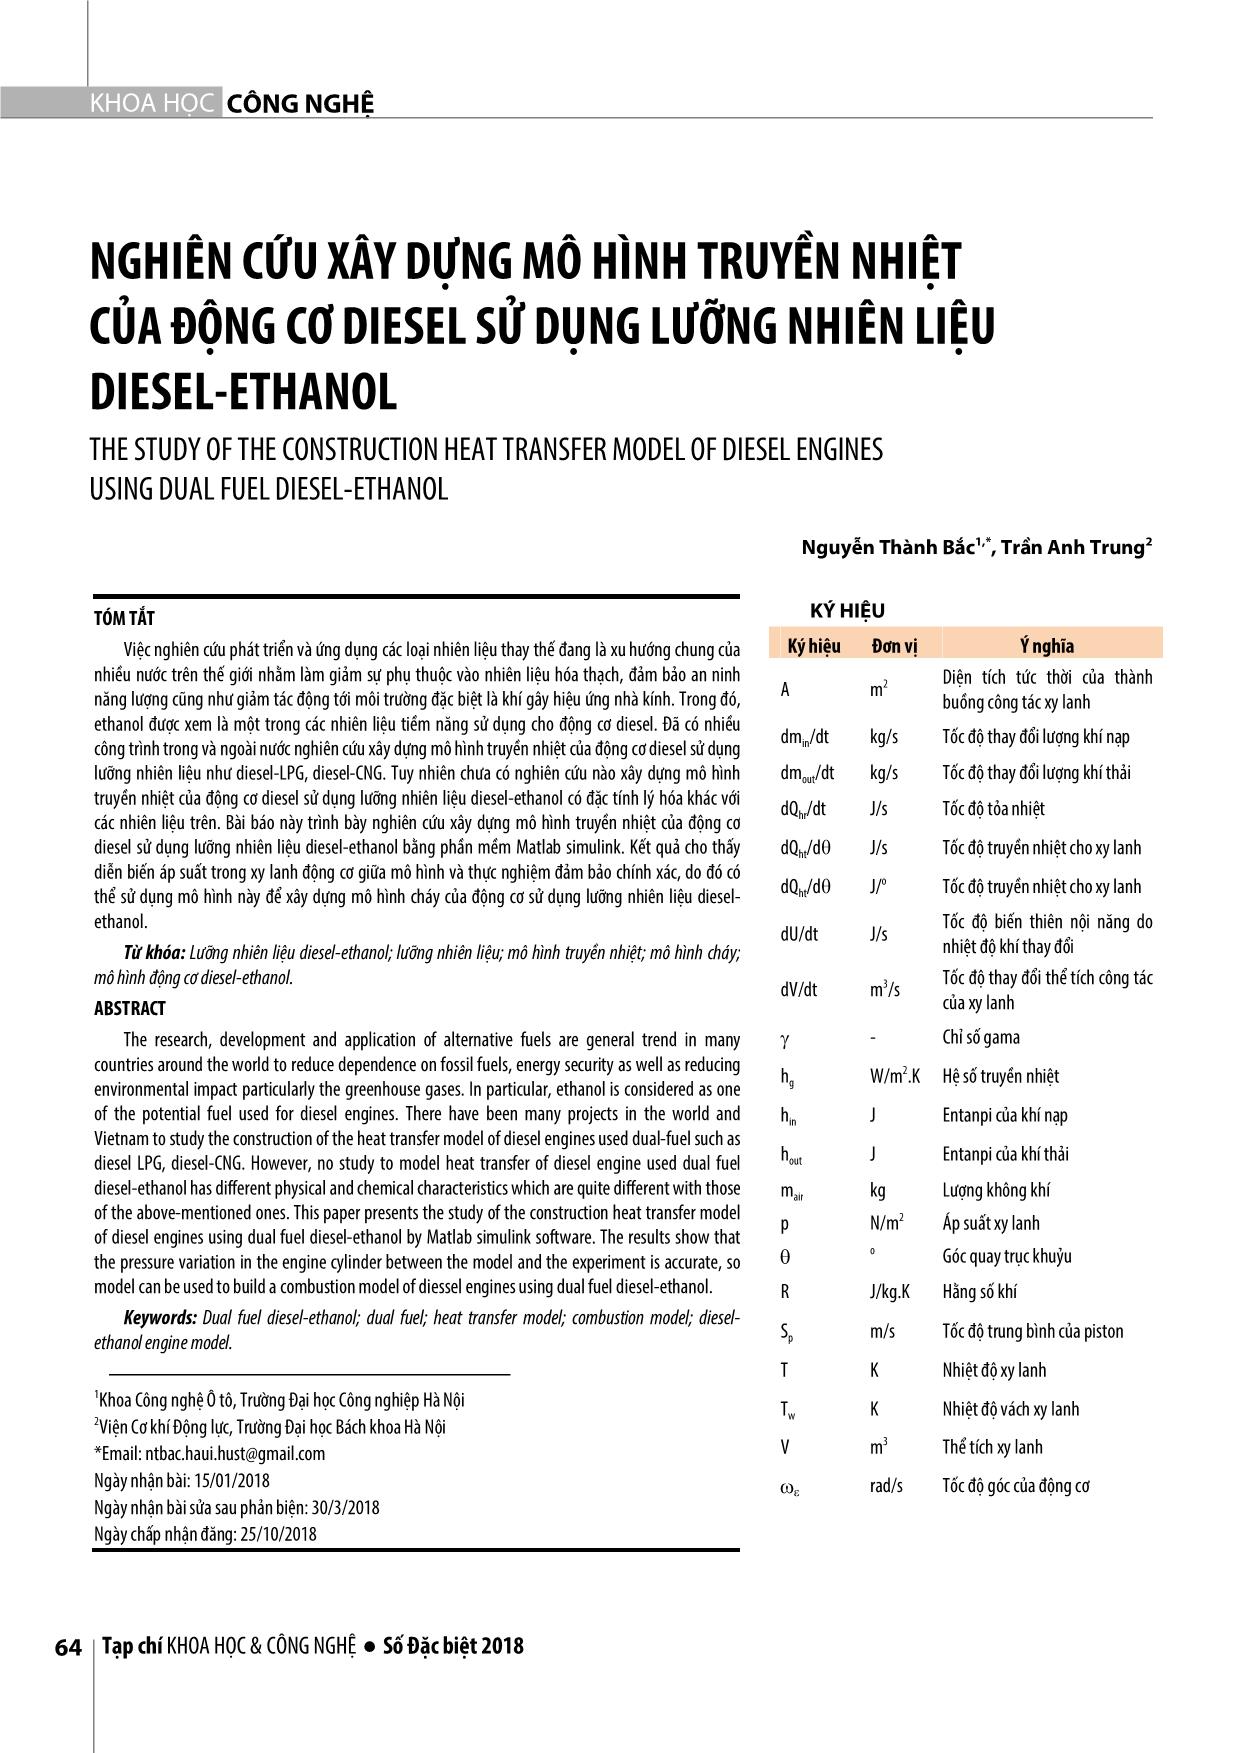 Nghiên cứu xây dựng mô hình truyền nhiệt của động cơ diesel sử dụng lưỡng nhiên liệu Diesel-Ethanol trang 1